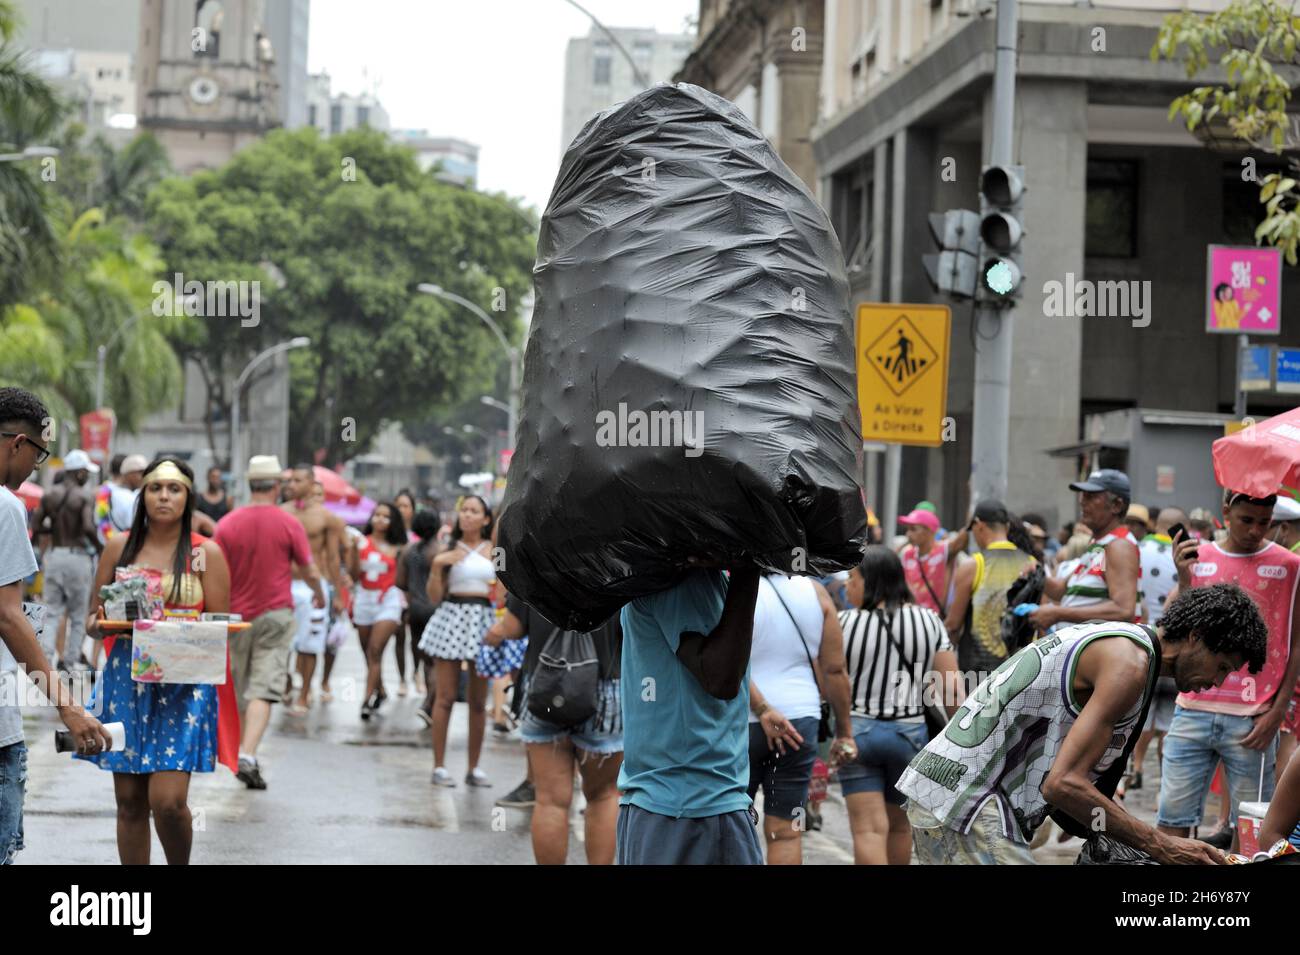 América, Brasil – 22 de febrero de 2020: Un hombre lleva una gran bolsa de basura llena de latas desechables para su reciclaje durante un desfile de carnaval en Río de Janeiro Foto de stock